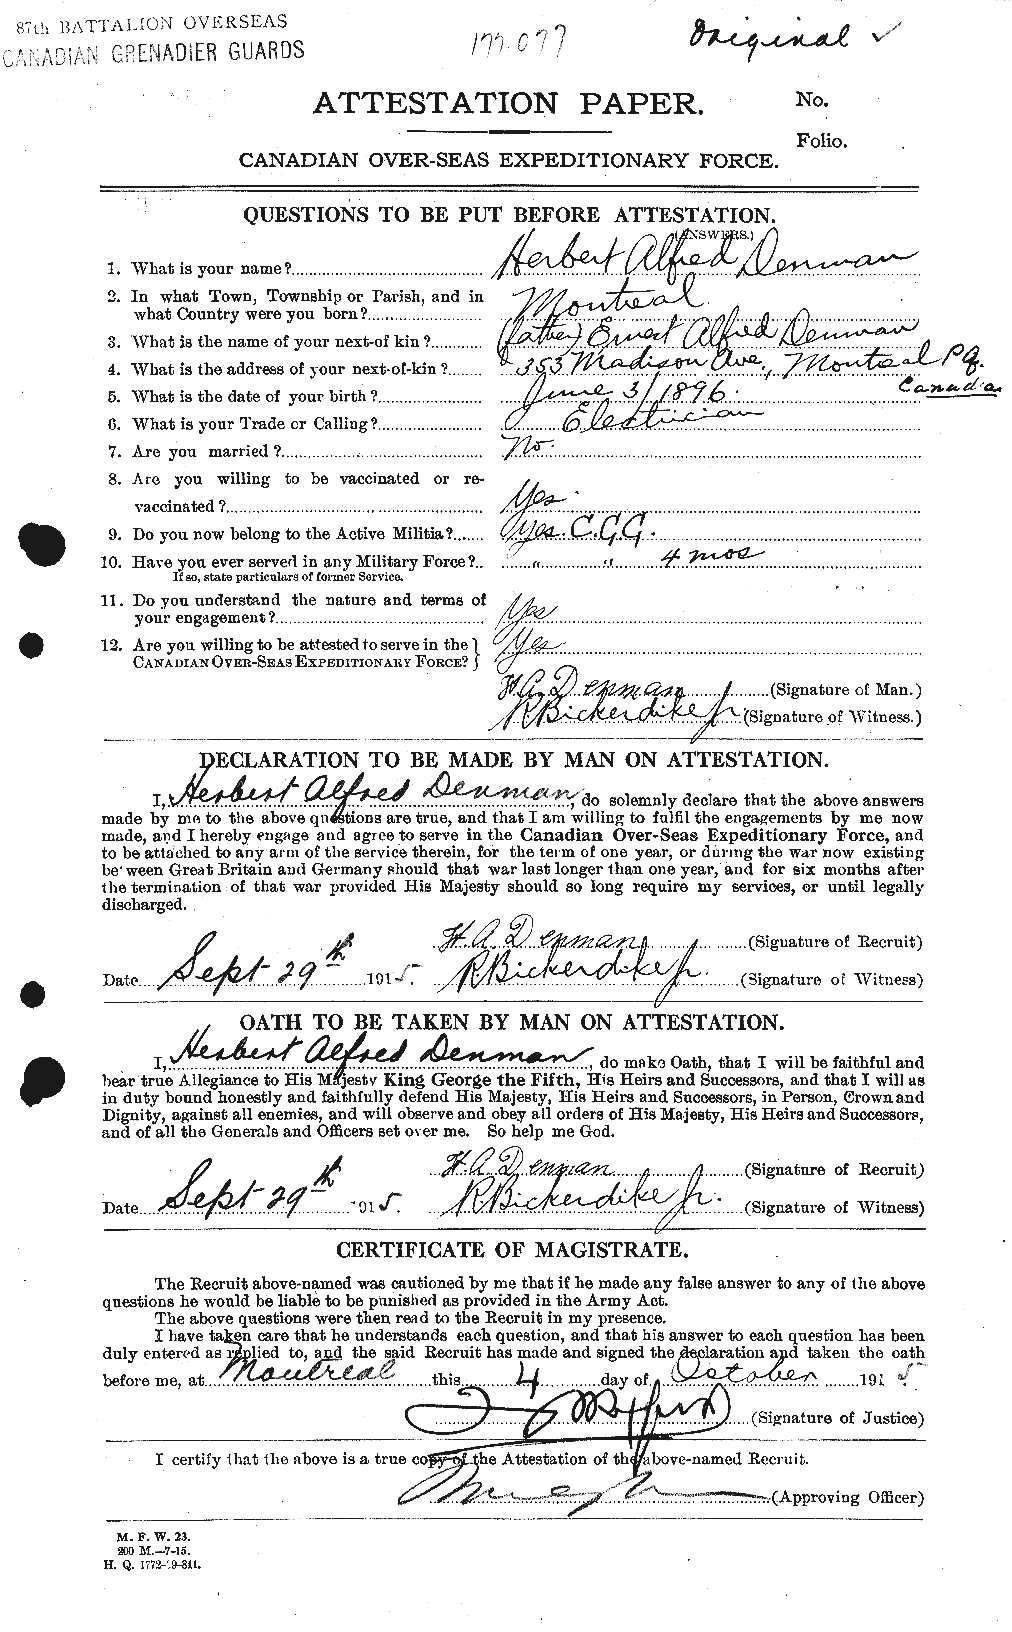 Dossiers du Personnel de la Première Guerre mondiale - CEC 288121a